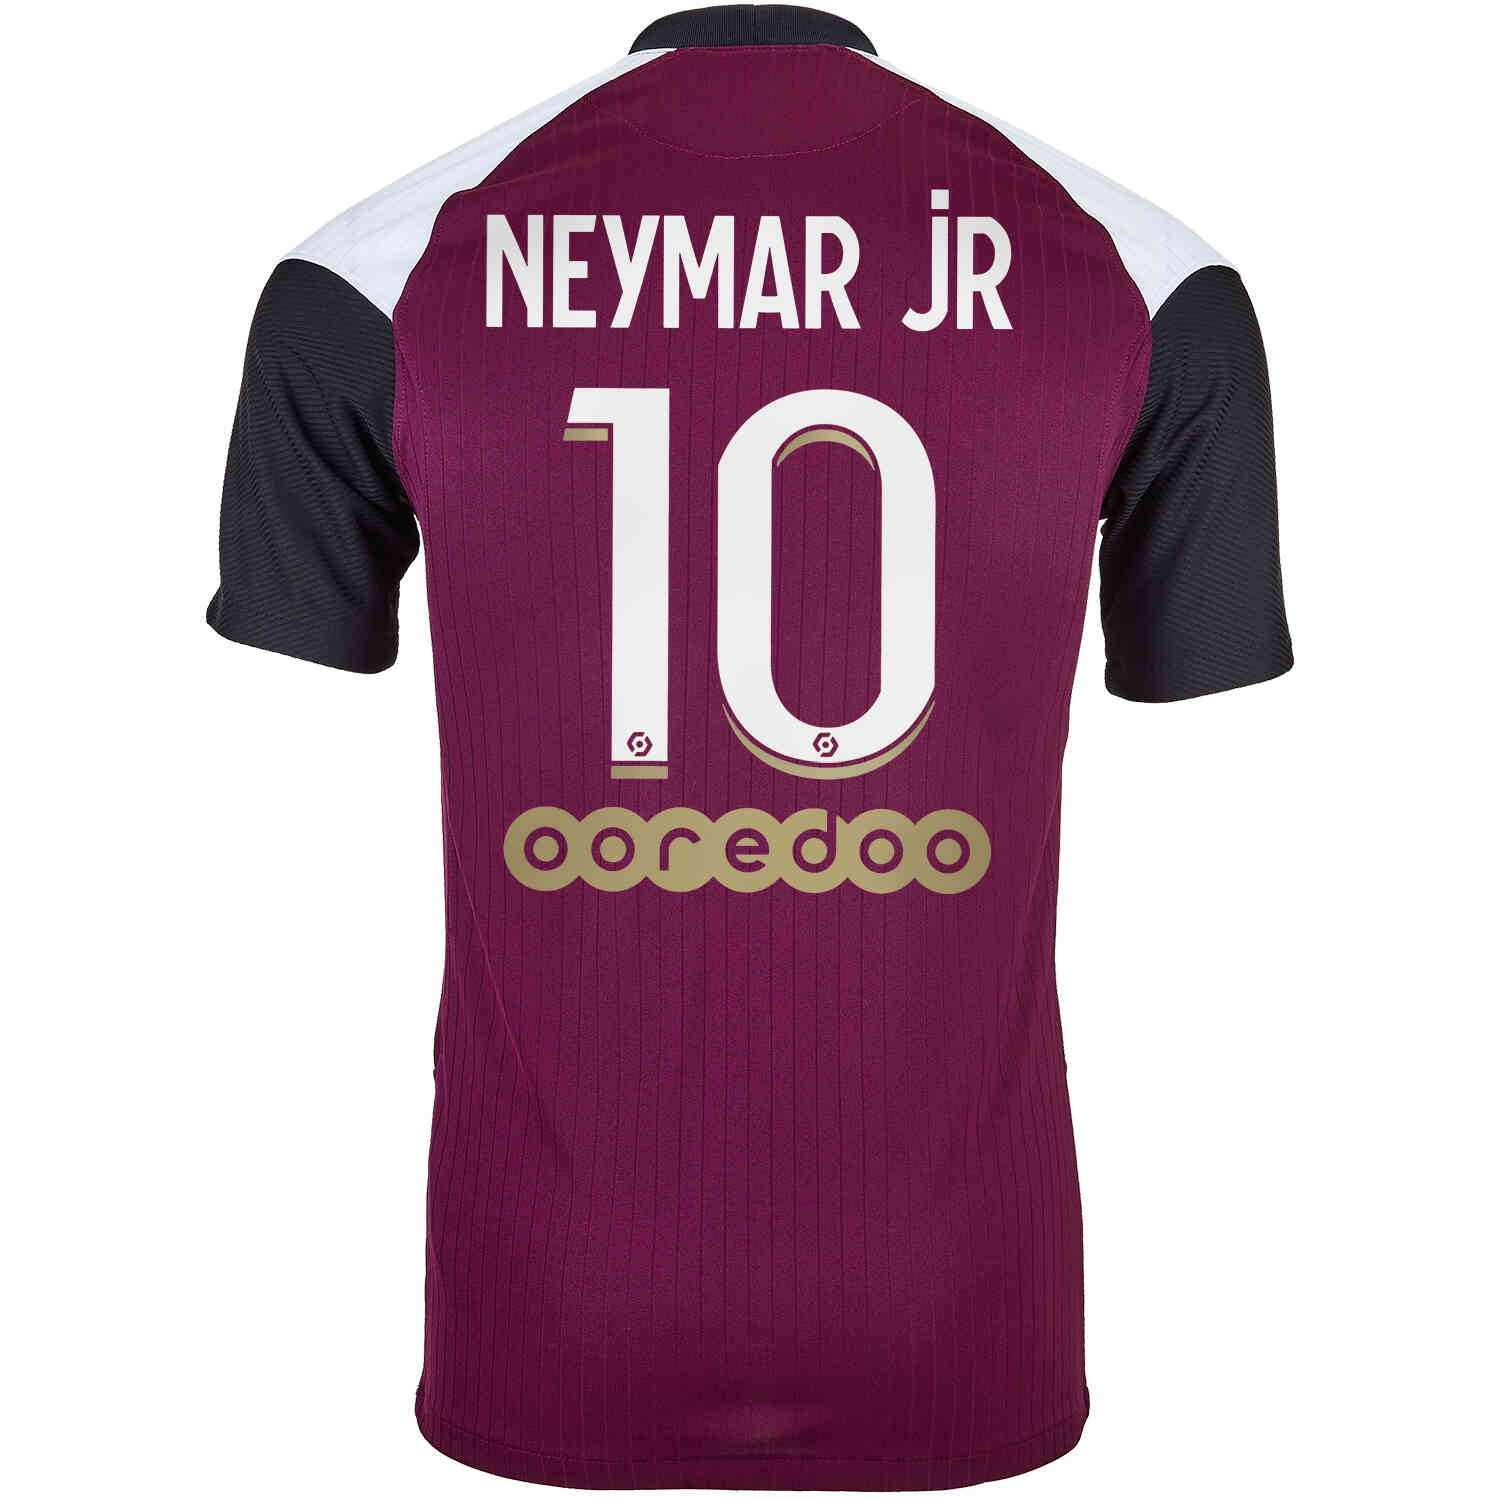 2020/21 Nike Neymar Jr PSG 3rd Jersey - SoccerPro